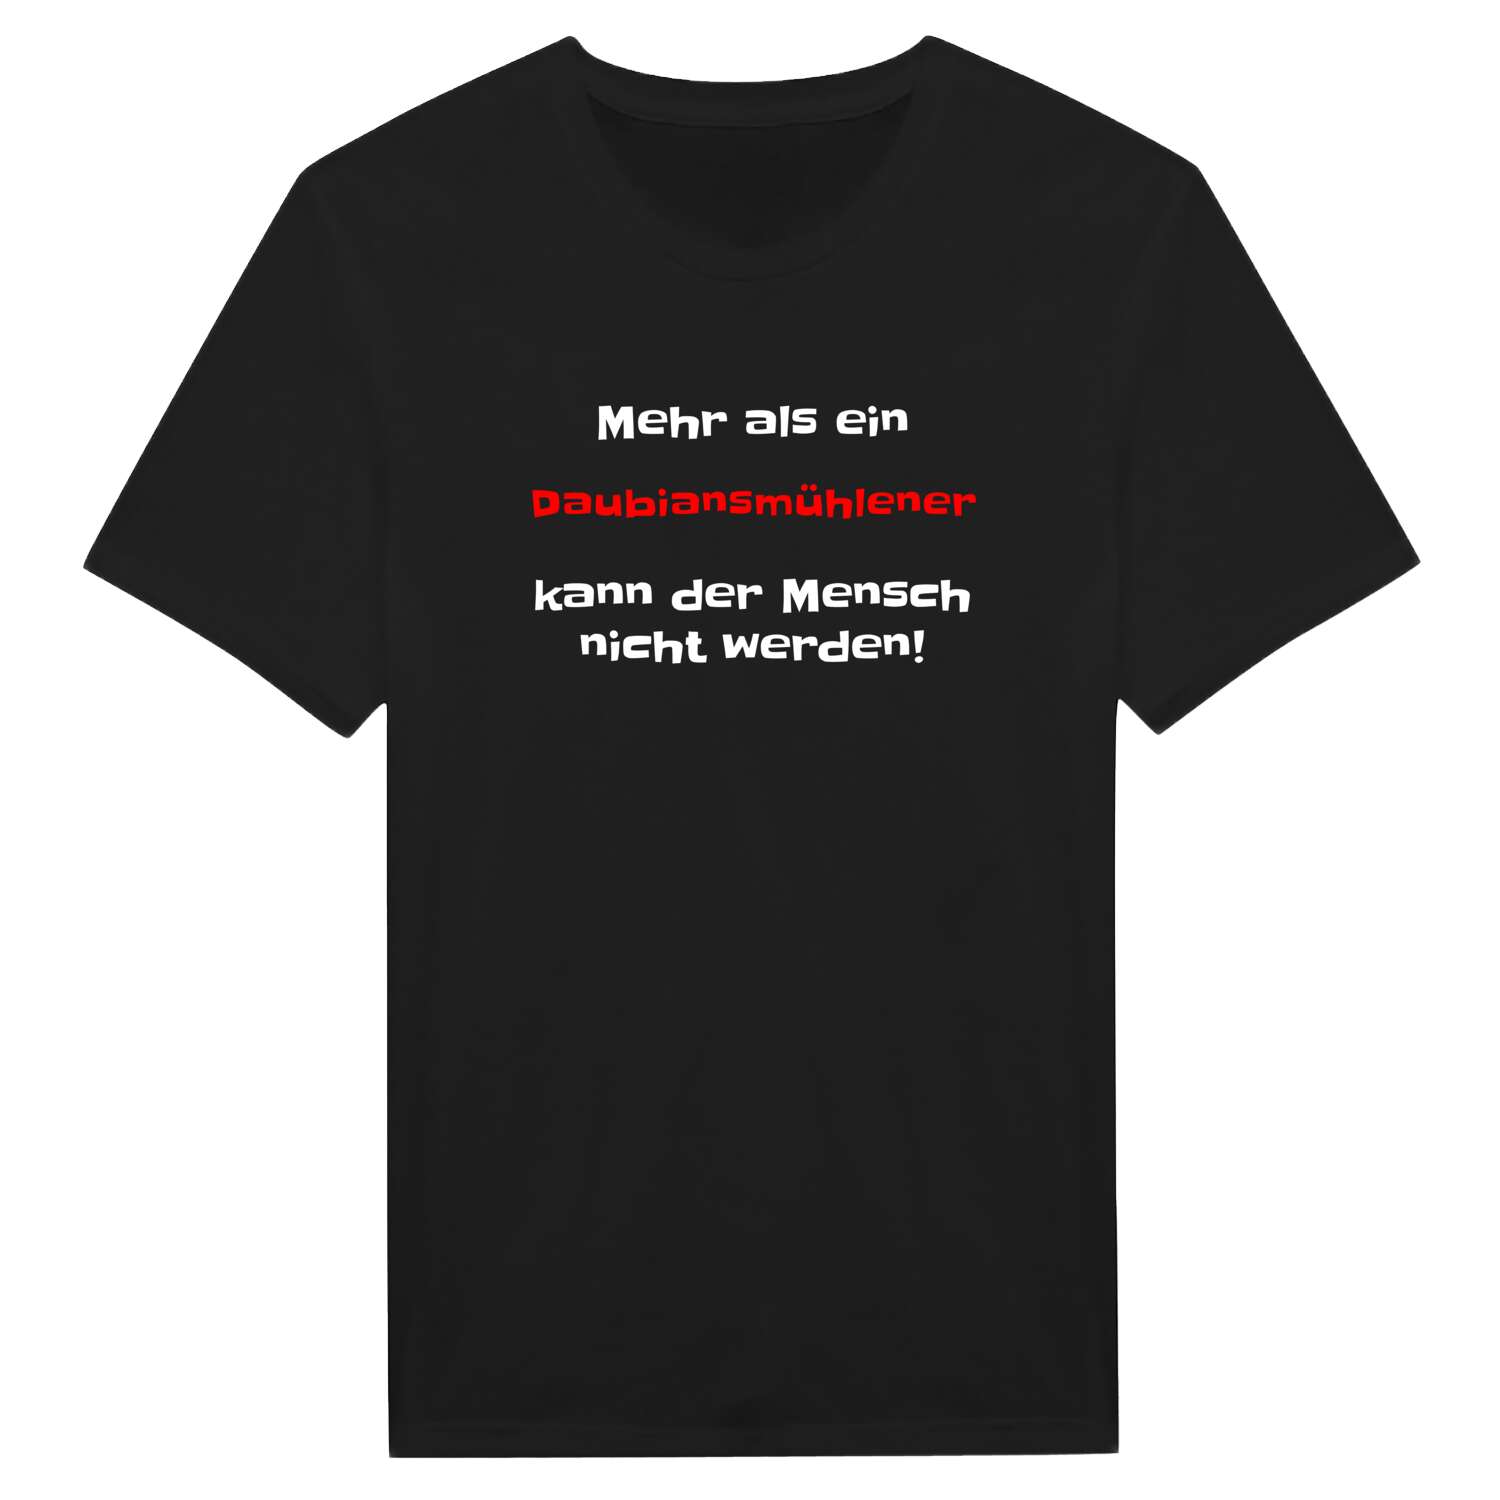 Daubiansmühle T-Shirt »Mehr als ein«